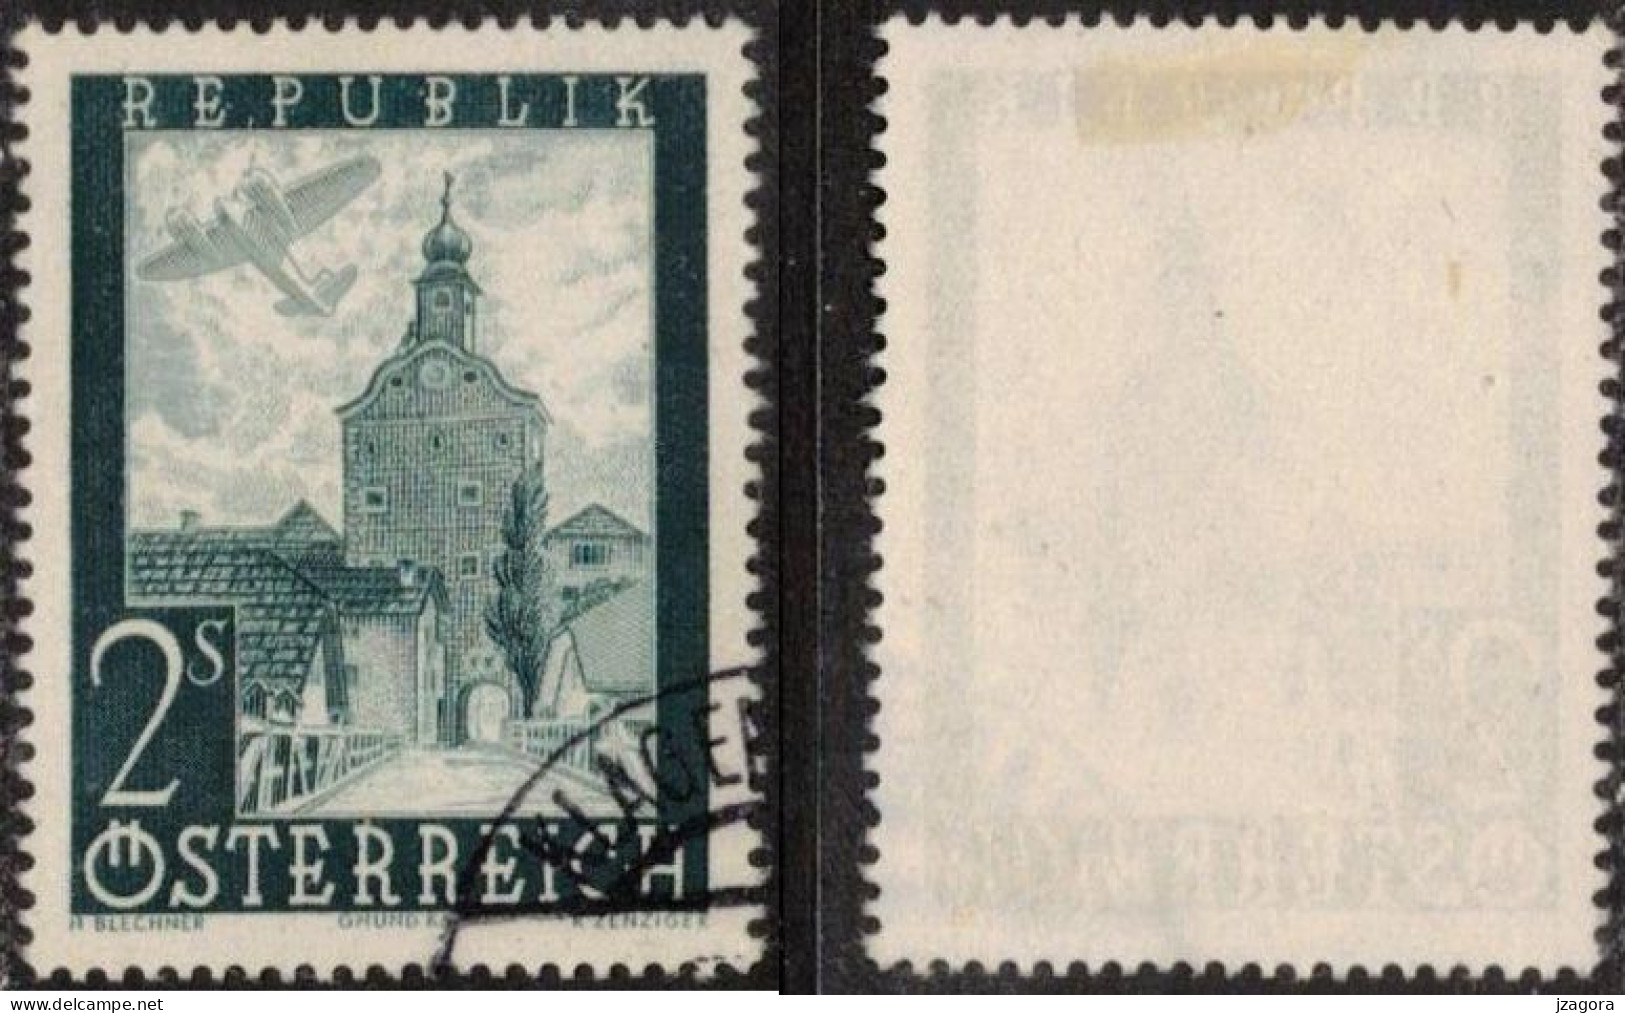 ARCHITECTURE HISTORY STADTTURM CITY TOWER GRUMD AUSTRIA ÖSTERREICH AUTRICHE 1947 MI 824 Sc C49 Flugpost Air Mail - Usados